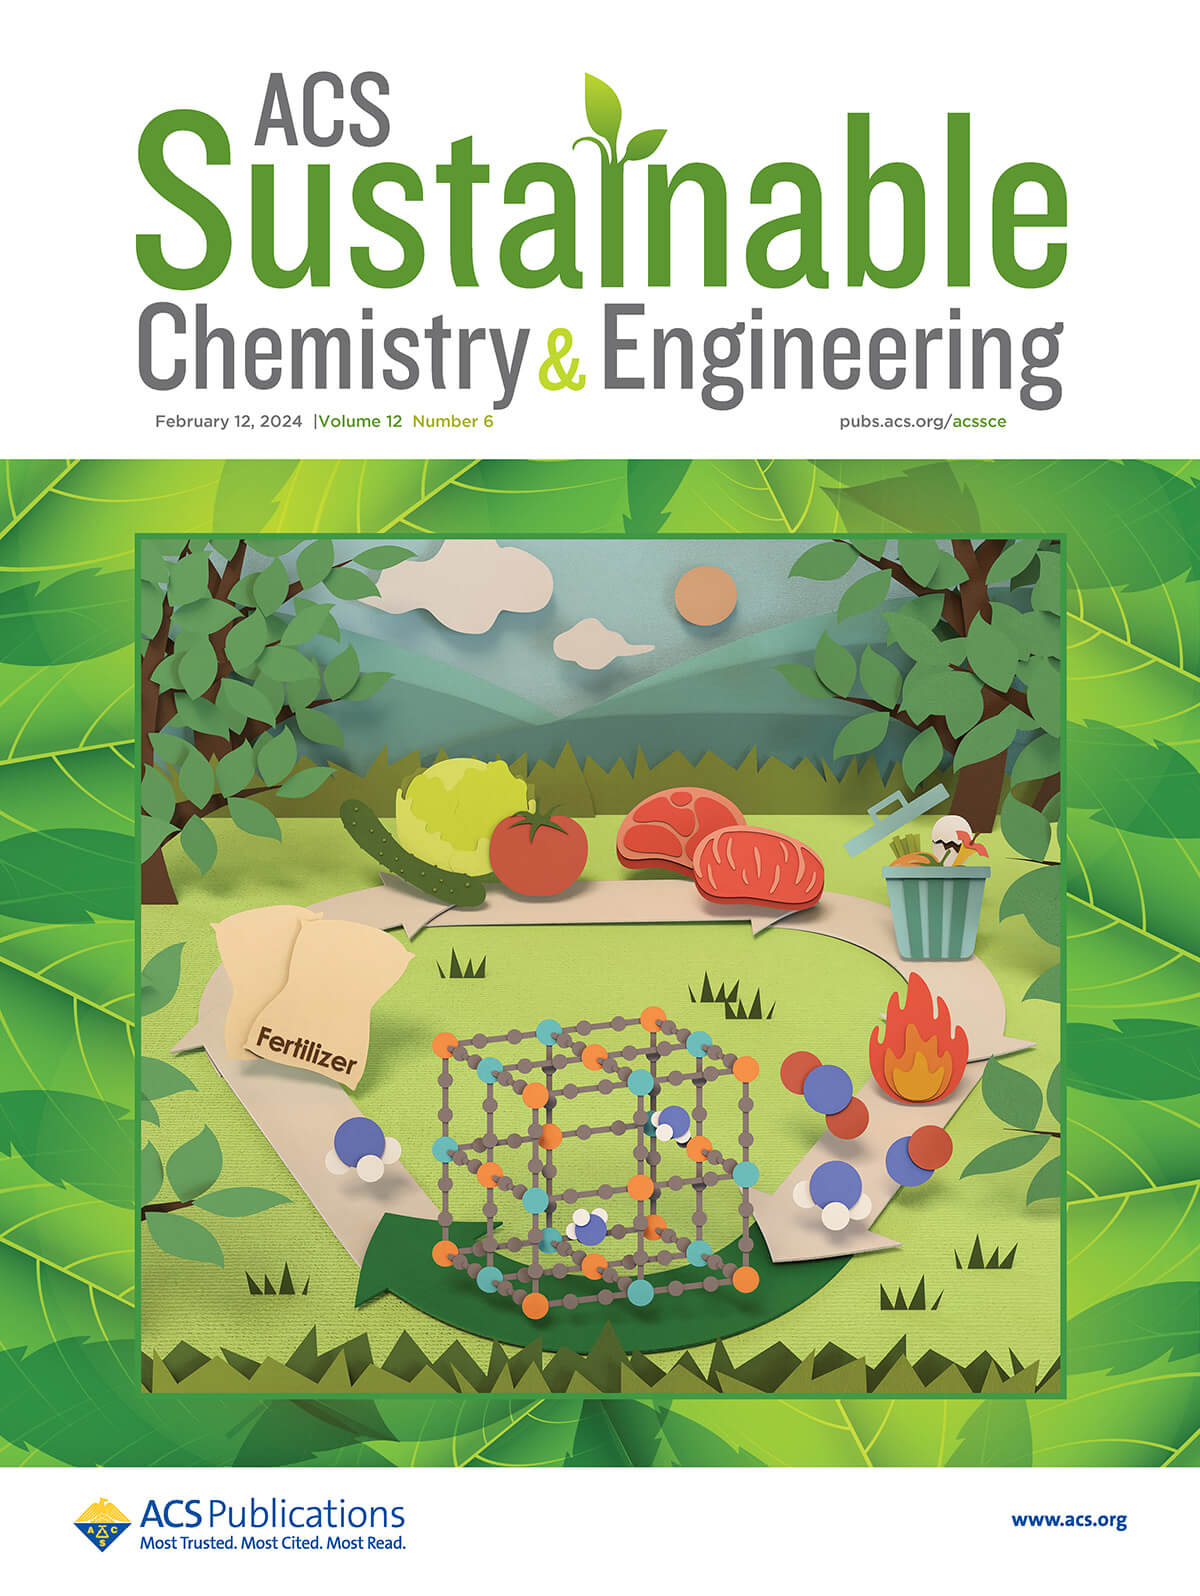 論文雑誌「ACS Sustainable Chemistry & Engineering」のカバー 